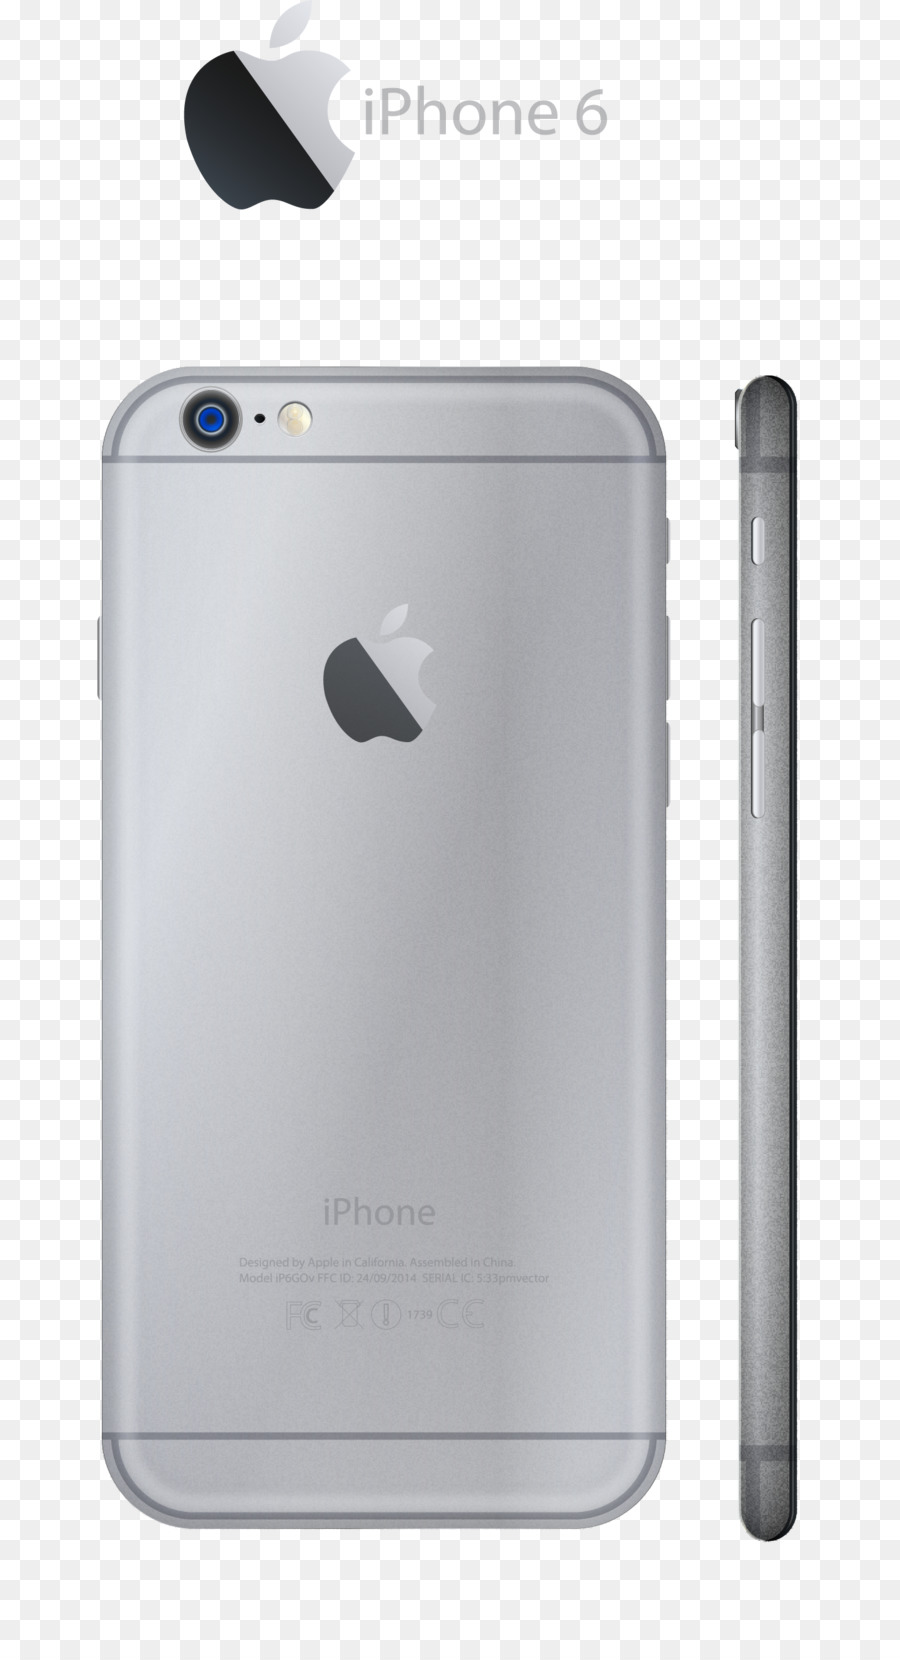 iPhone 6 Thoại Táo - Véc tơ tay sơn táo 6